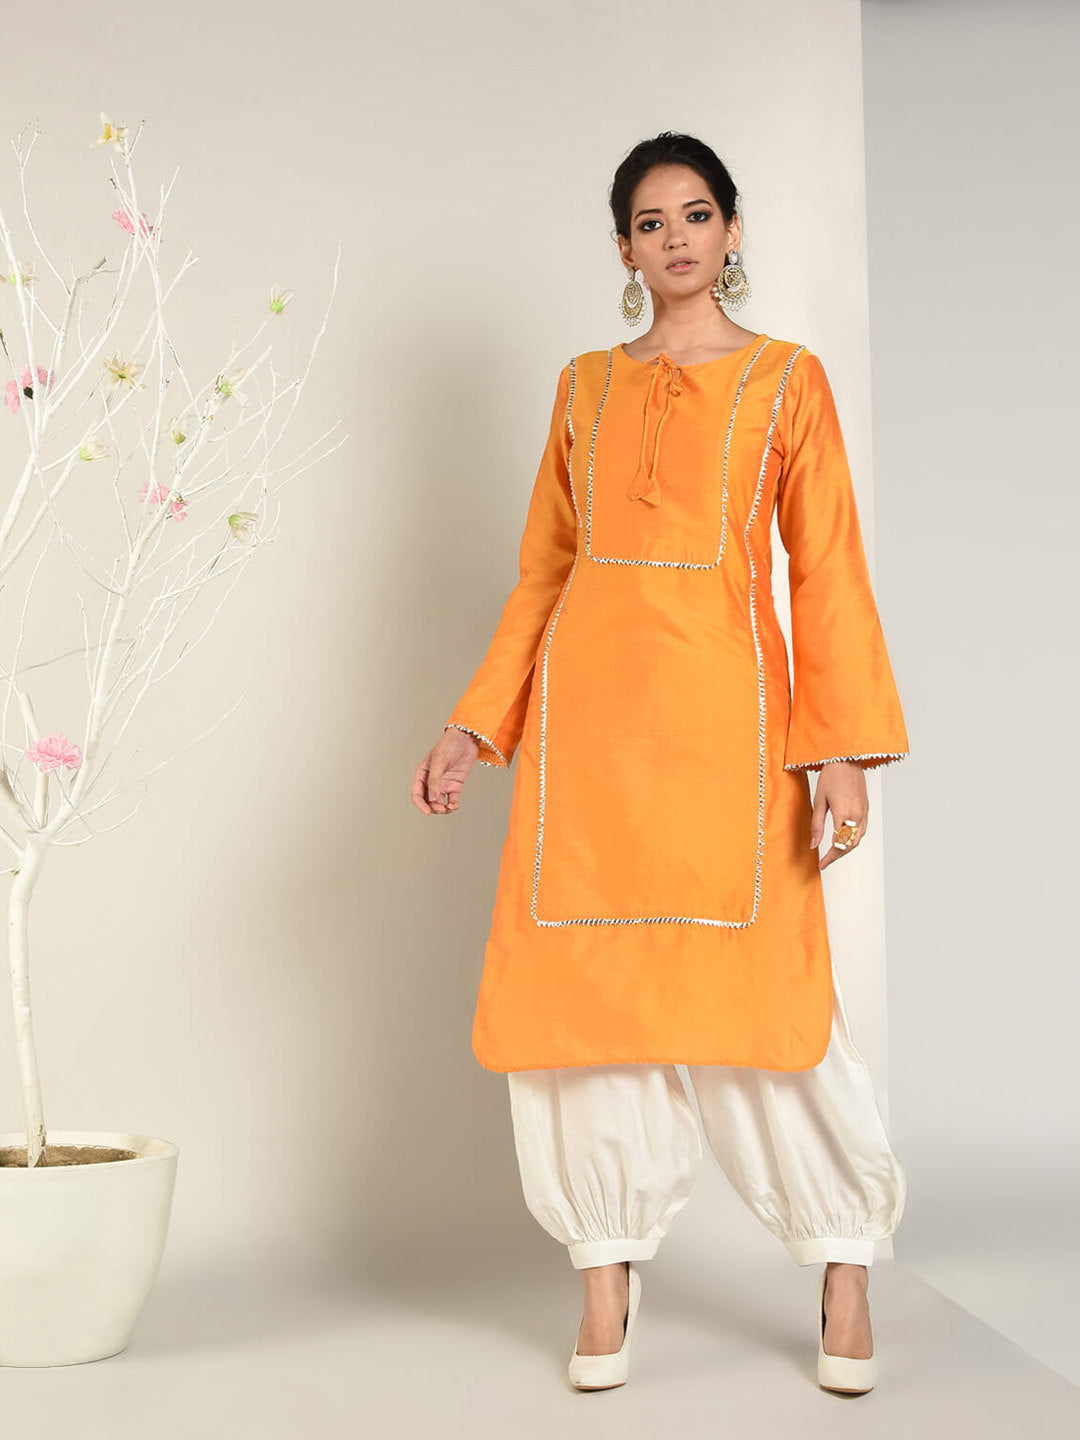 Men Black Pathani Suit Kurta Pyjama Jacket Set at Rs 3000/piece(s) | Khan  Dress in New Delhi | ID: 12415179597